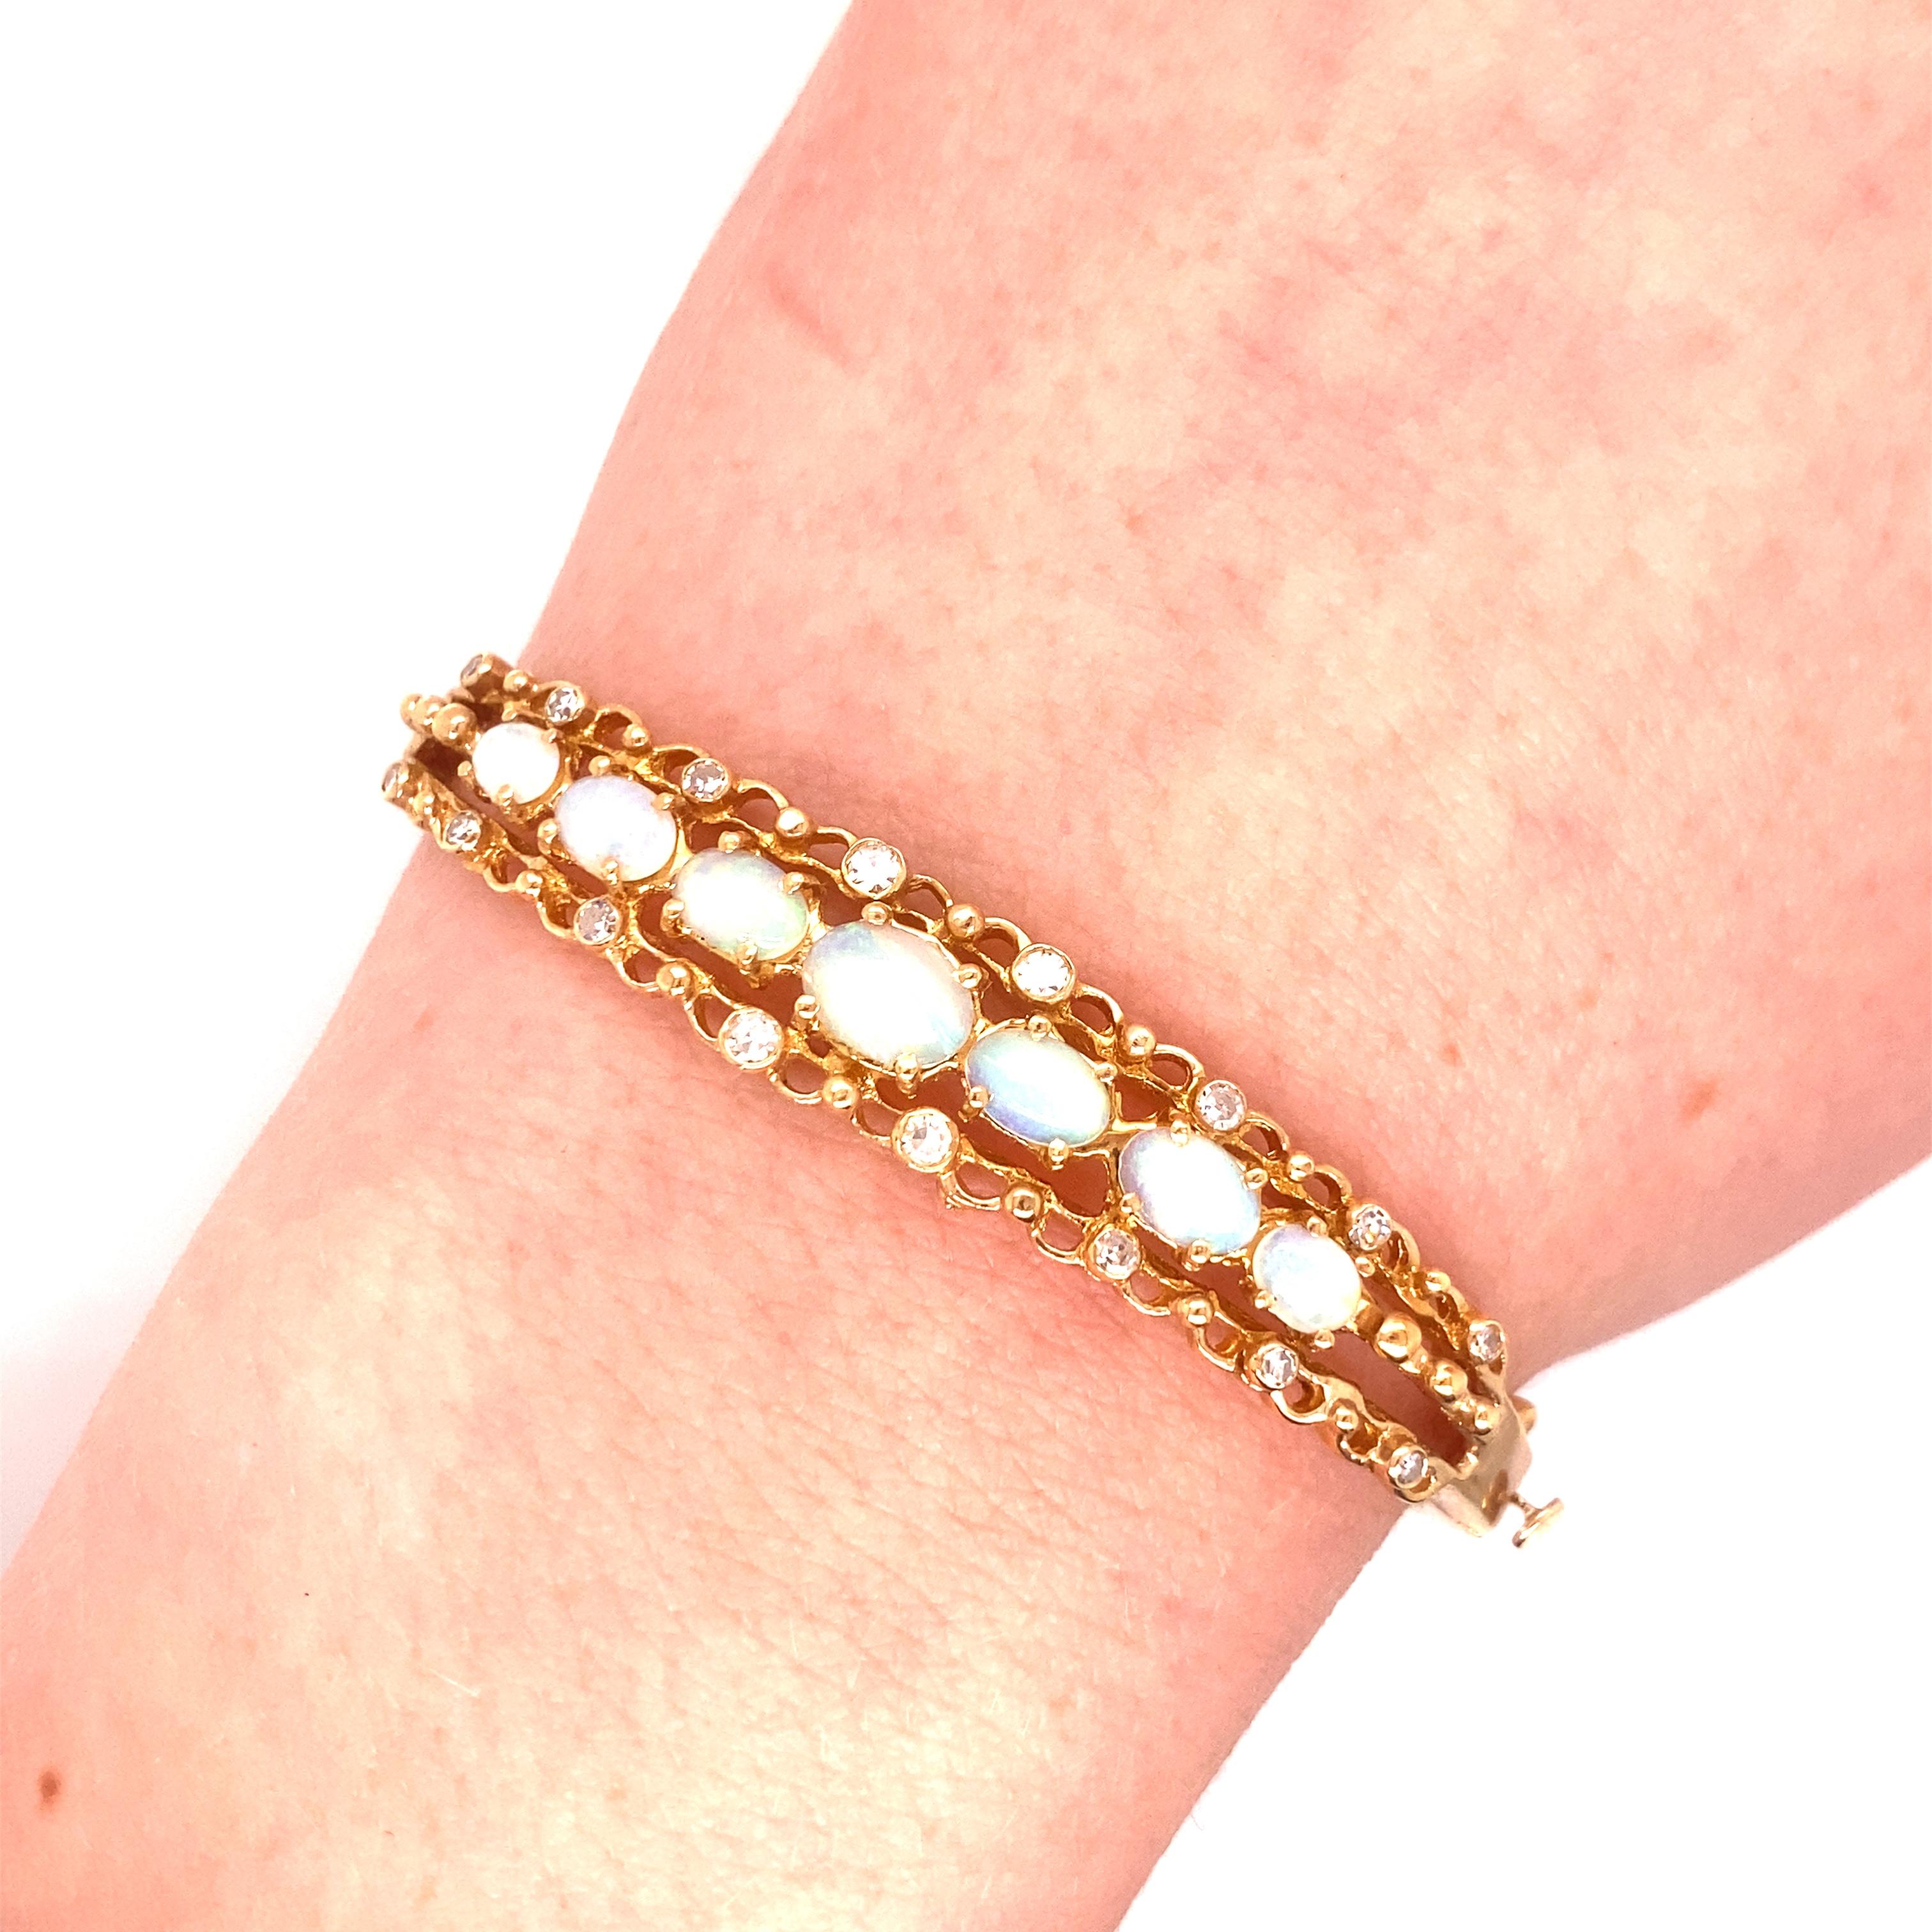 Bracelet vintage en or jaune 14K avec opales et diamants - Le bracelet contient 7 opales ovales graduées avec un jeu de couleurs vertes/bleues. Les tailles vont de 7 x 5mm, 6 x 4mm et 5 x 3mm. Les 16 diamants taillés en une seule pièce et sertis